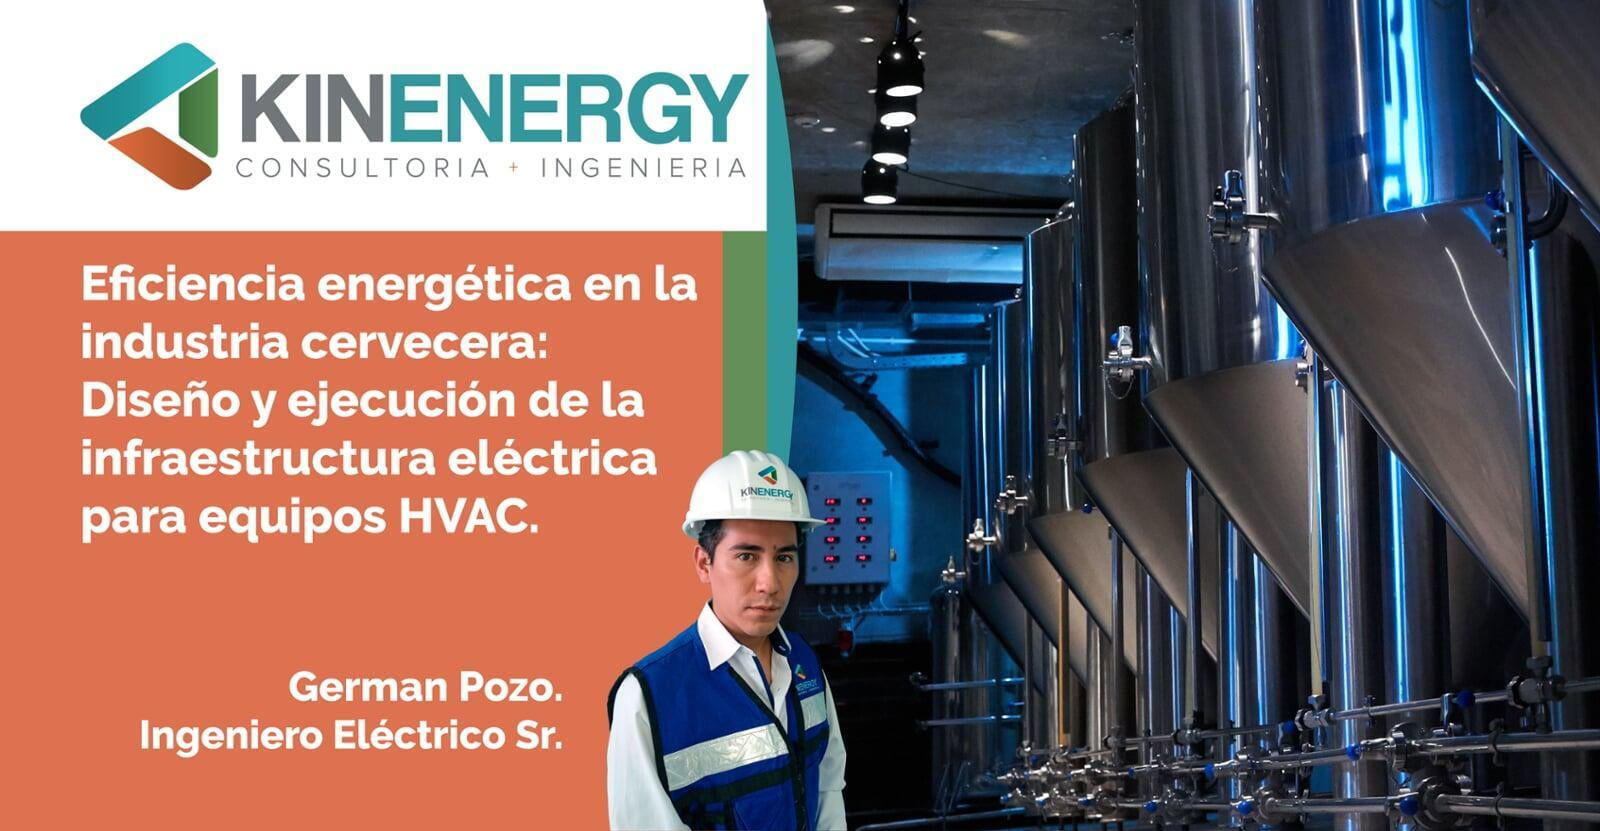 Eficiencia energética en la industria cervecera: diseño y ejecución de la infraestructura eléctrica para equipos HVAC